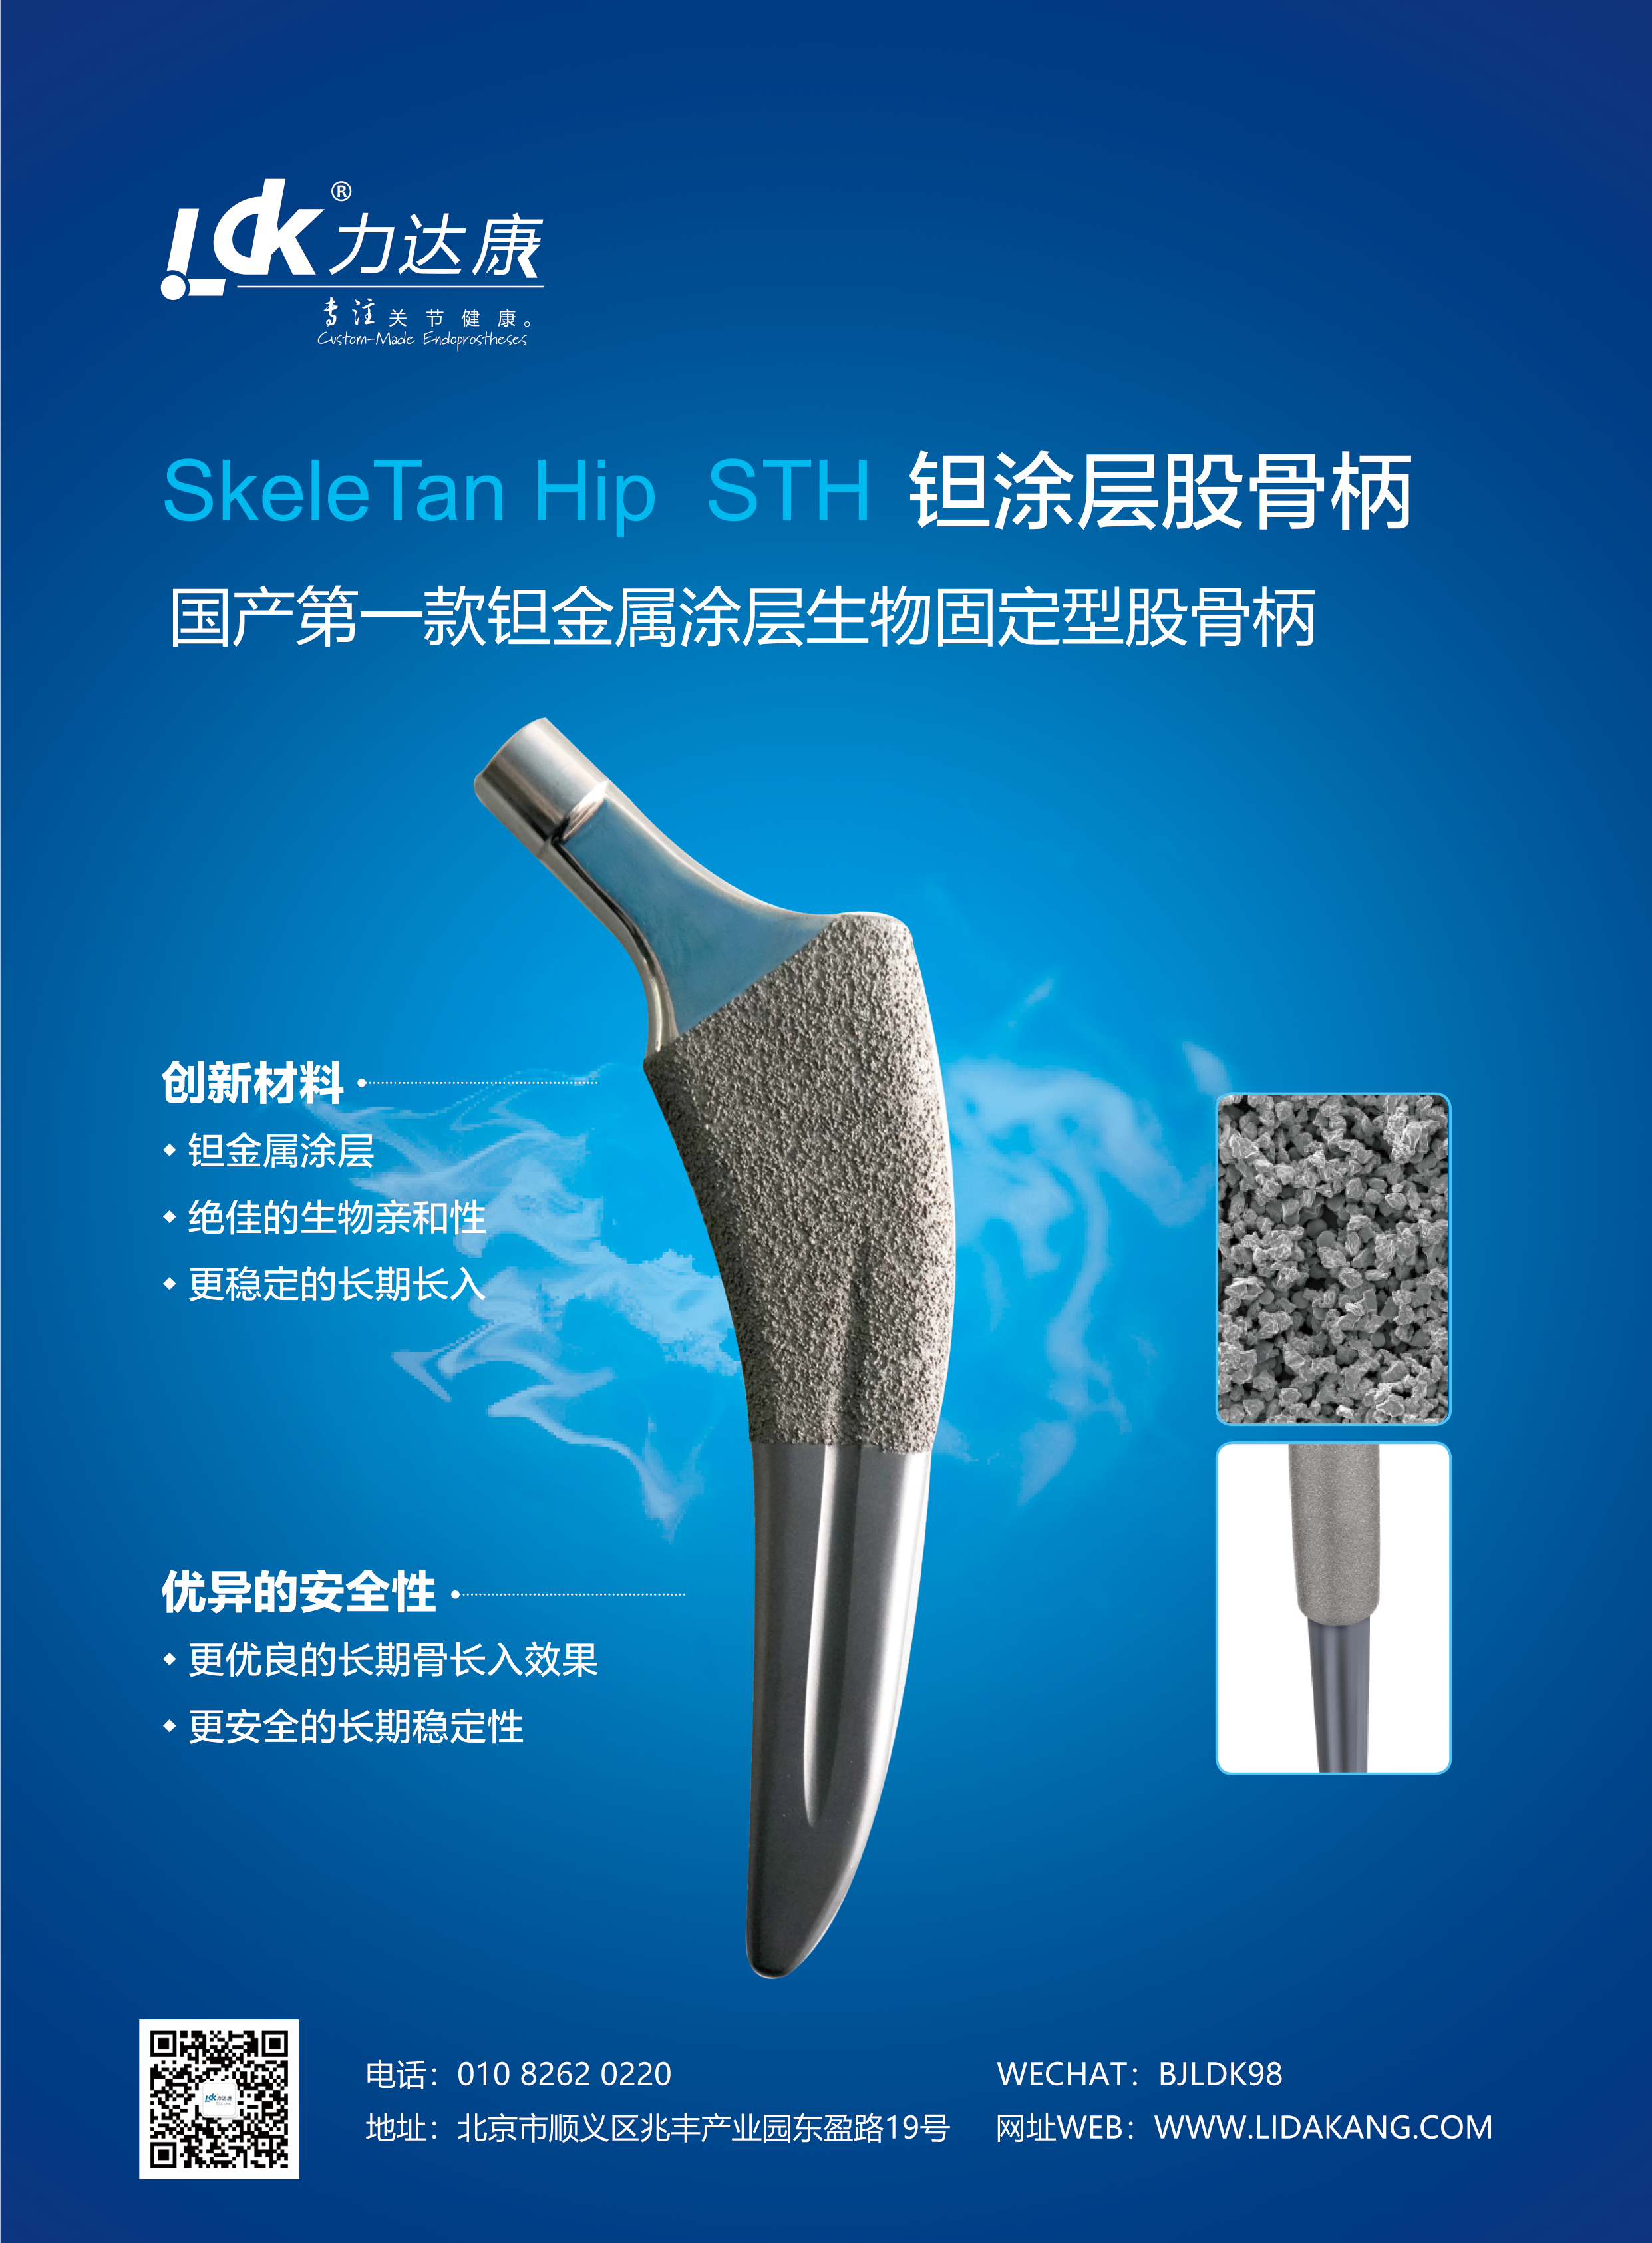 【攻克技术垄断】首款国产钽涂层股骨柄获批上市，标志着中国骨科器械研发步入技术创新时代